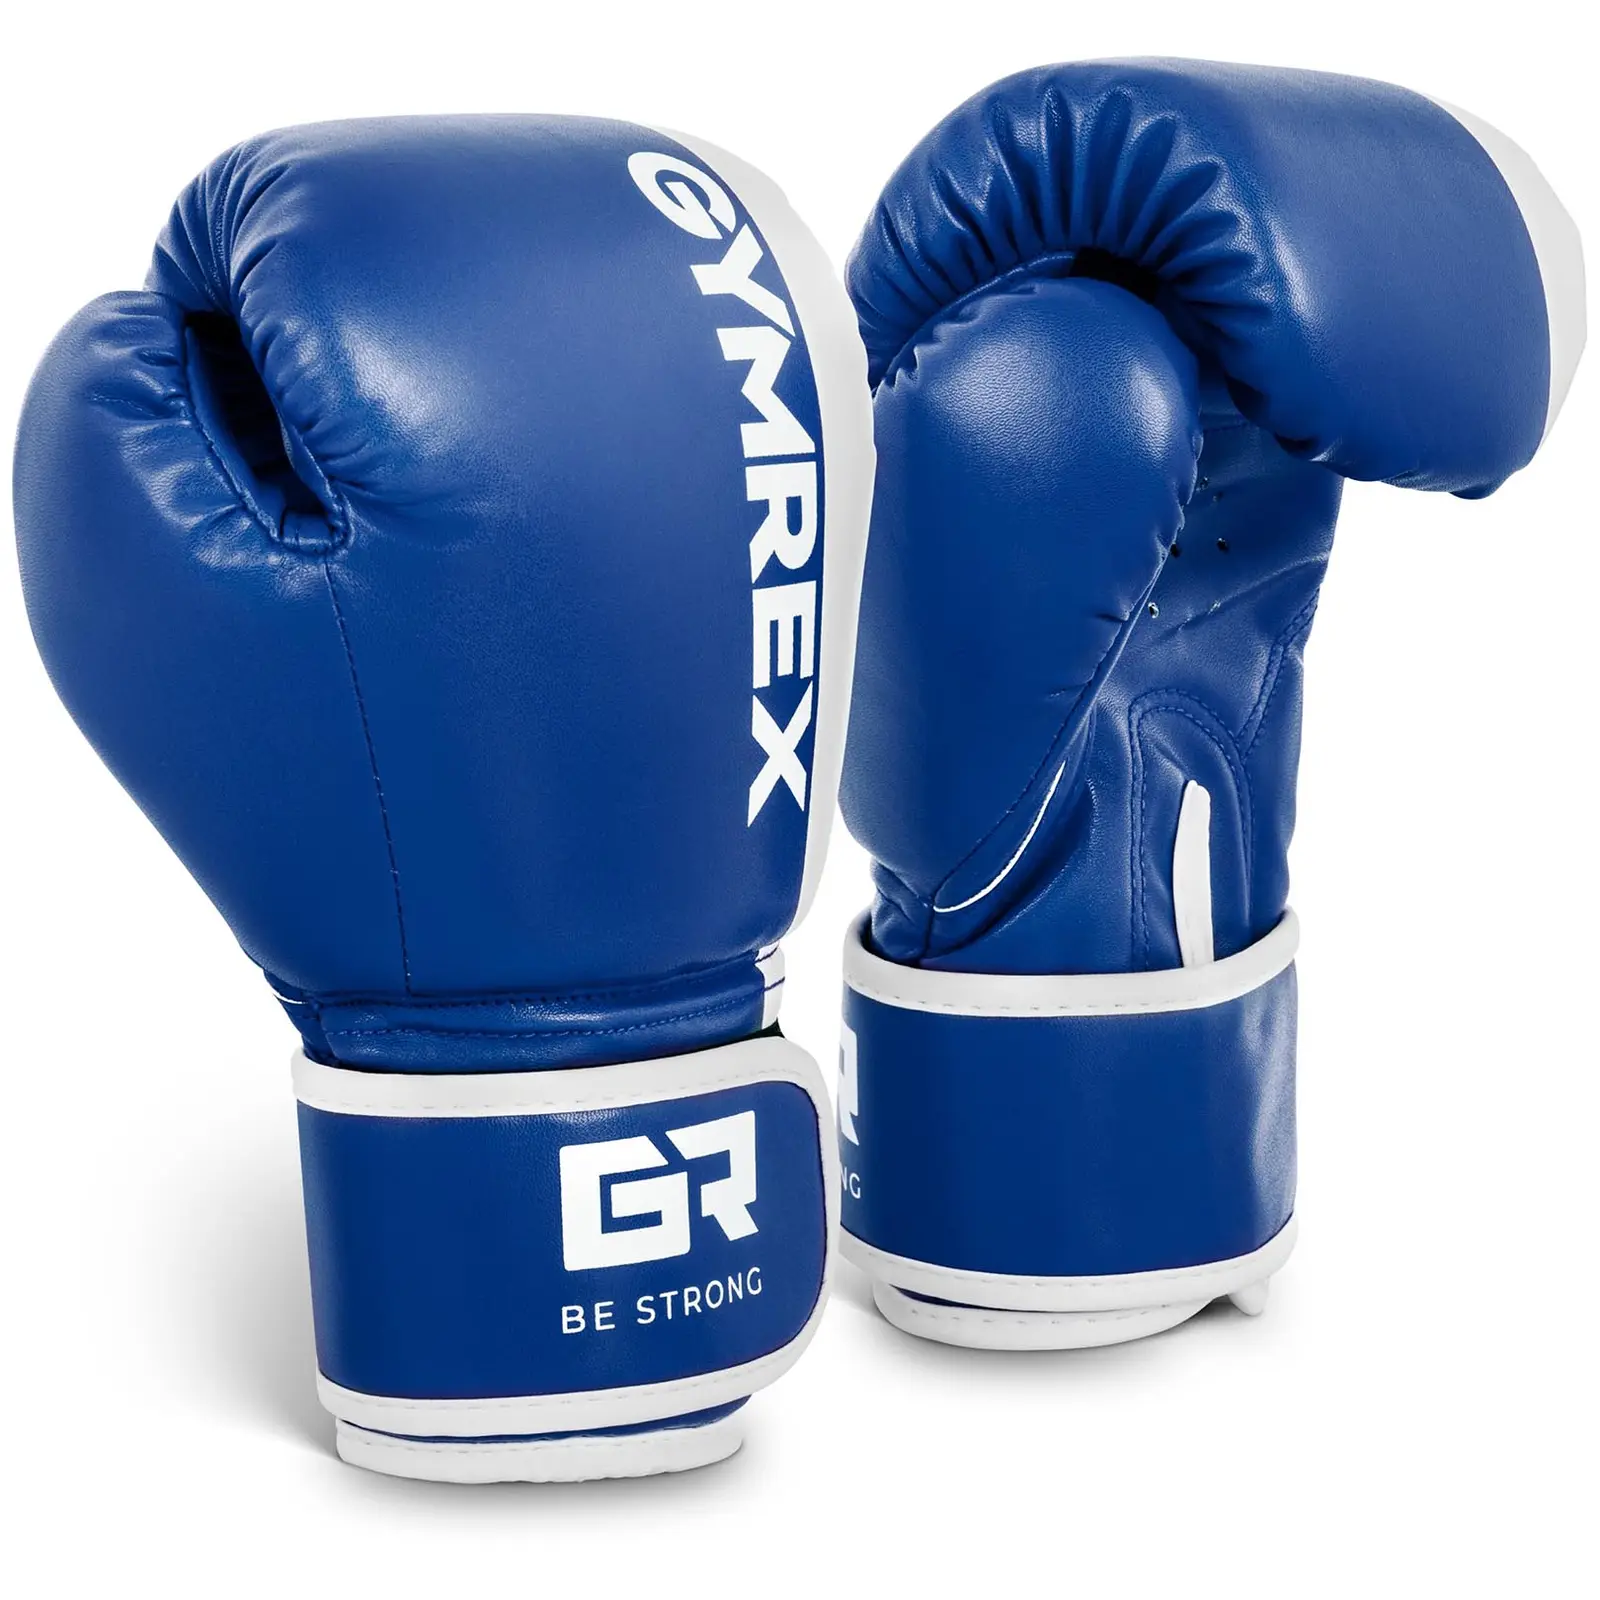 Dětské boxerské rukavice - 6 oz - modrobílé